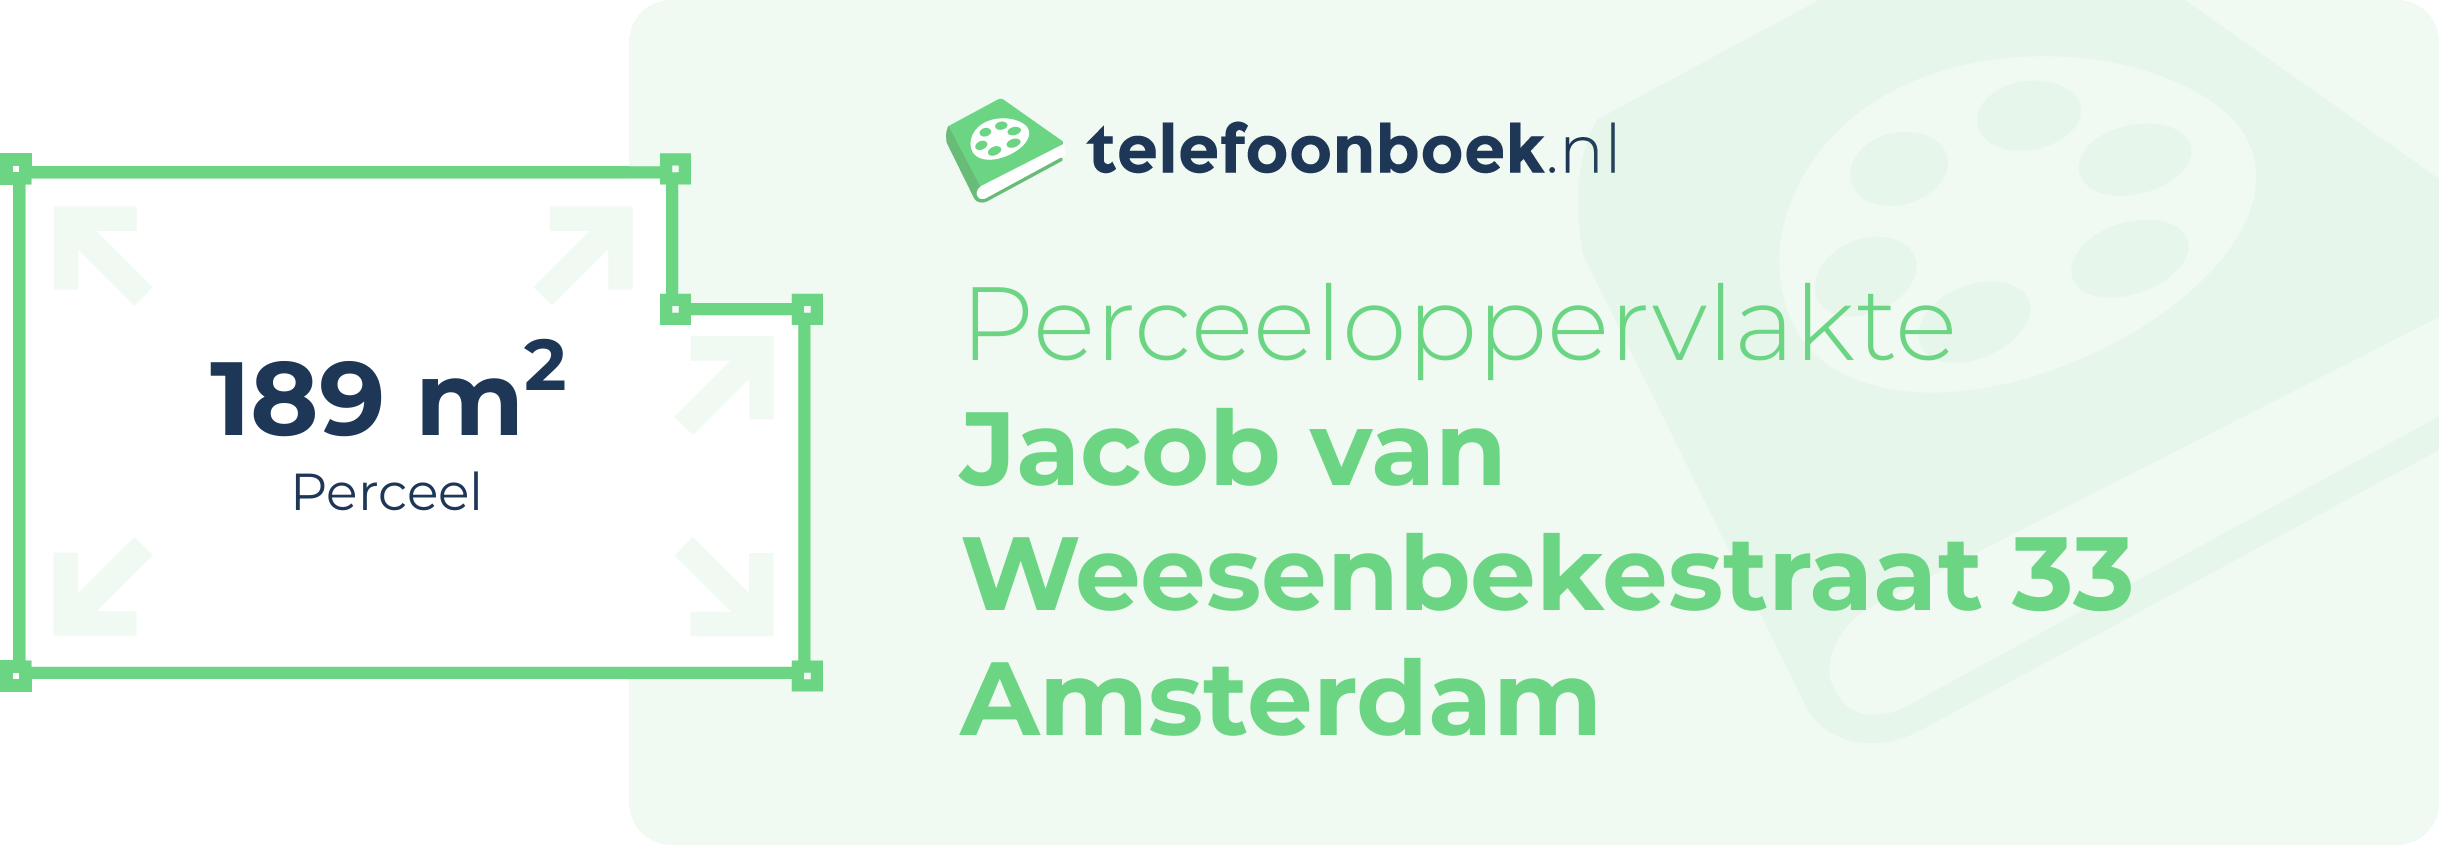 Perceeloppervlakte Jacob Van Weesenbekestraat 33 Amsterdam